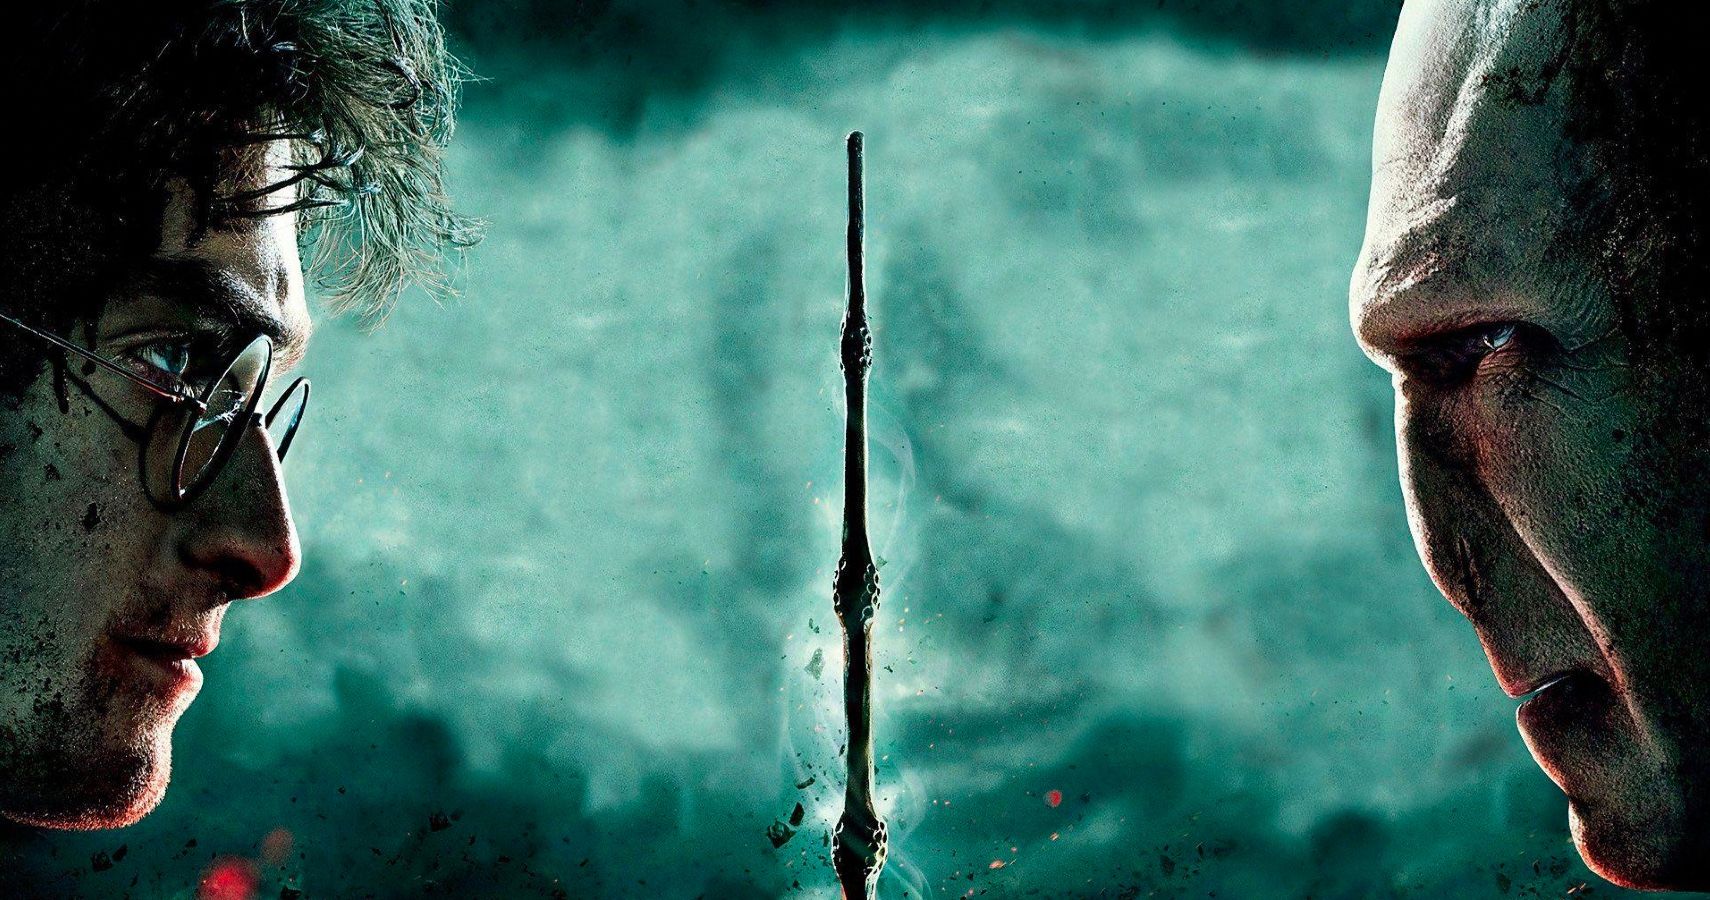 Uma olhada por dentro: a conexão de Harry Potter e Voldemort pela alma e a separação pela humanidade